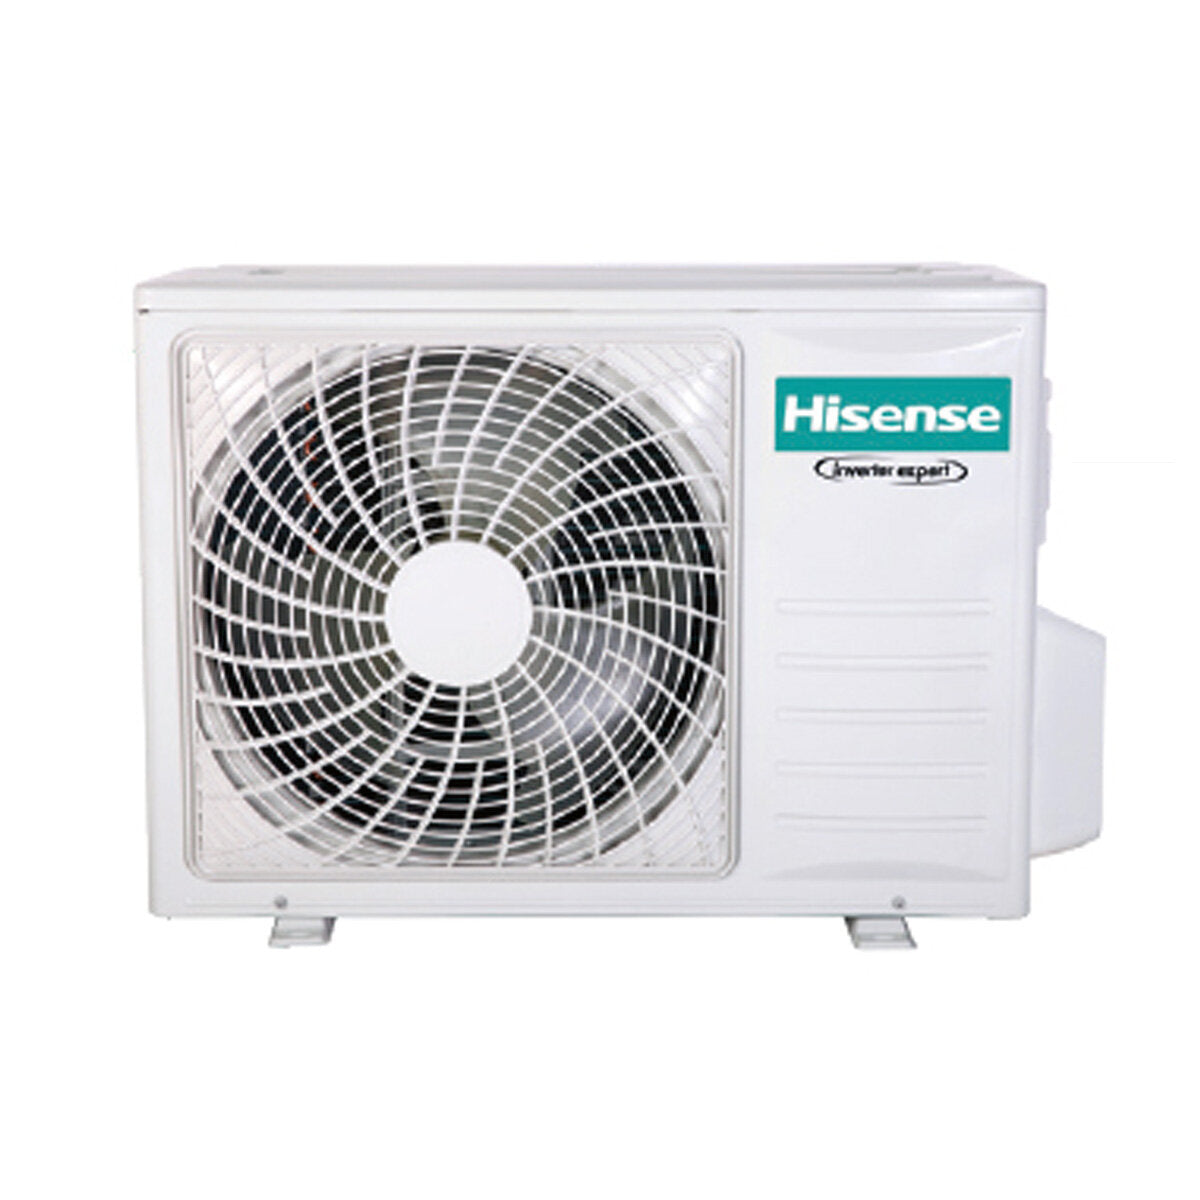 Hisense Hi-Comfort climatiseur double split 12000+12000 BTU onduleur A++ wifi unité extérieure 6,3 kW